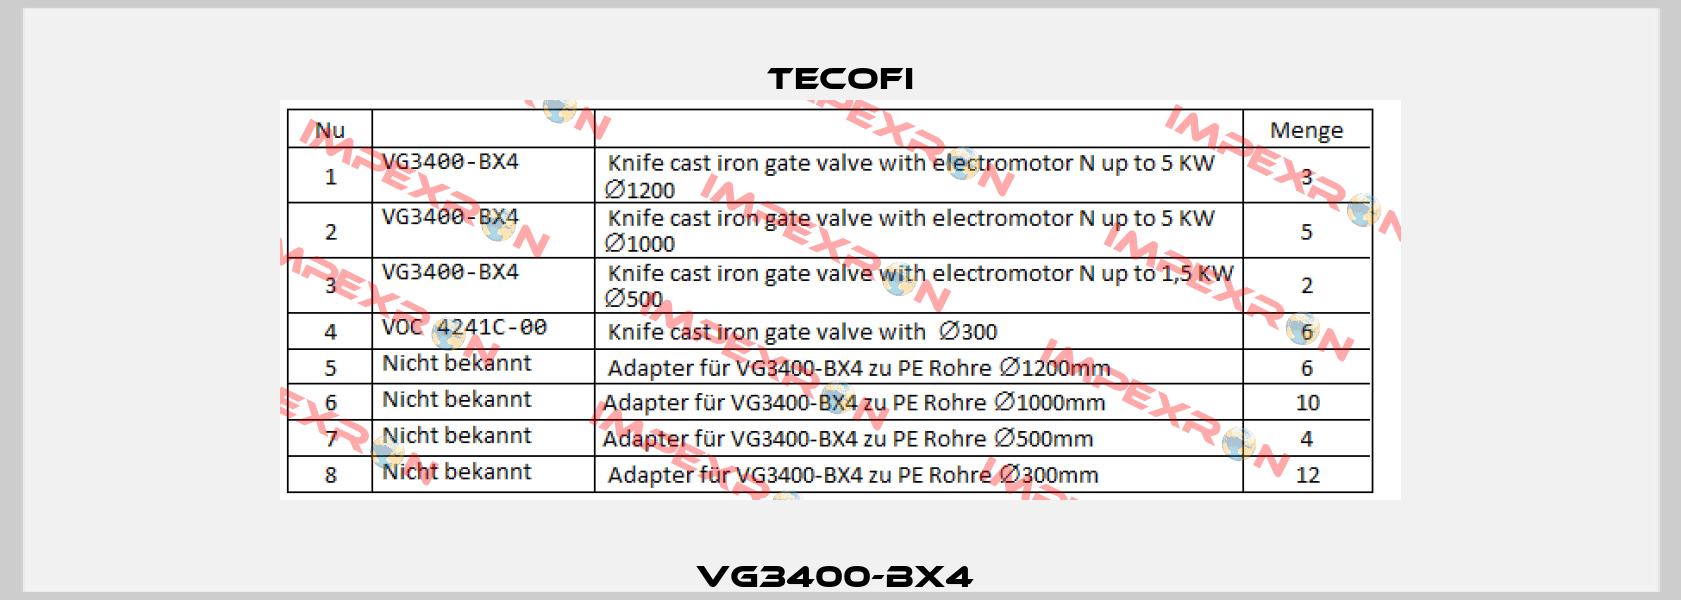 VG3400-BX4  Tecofi